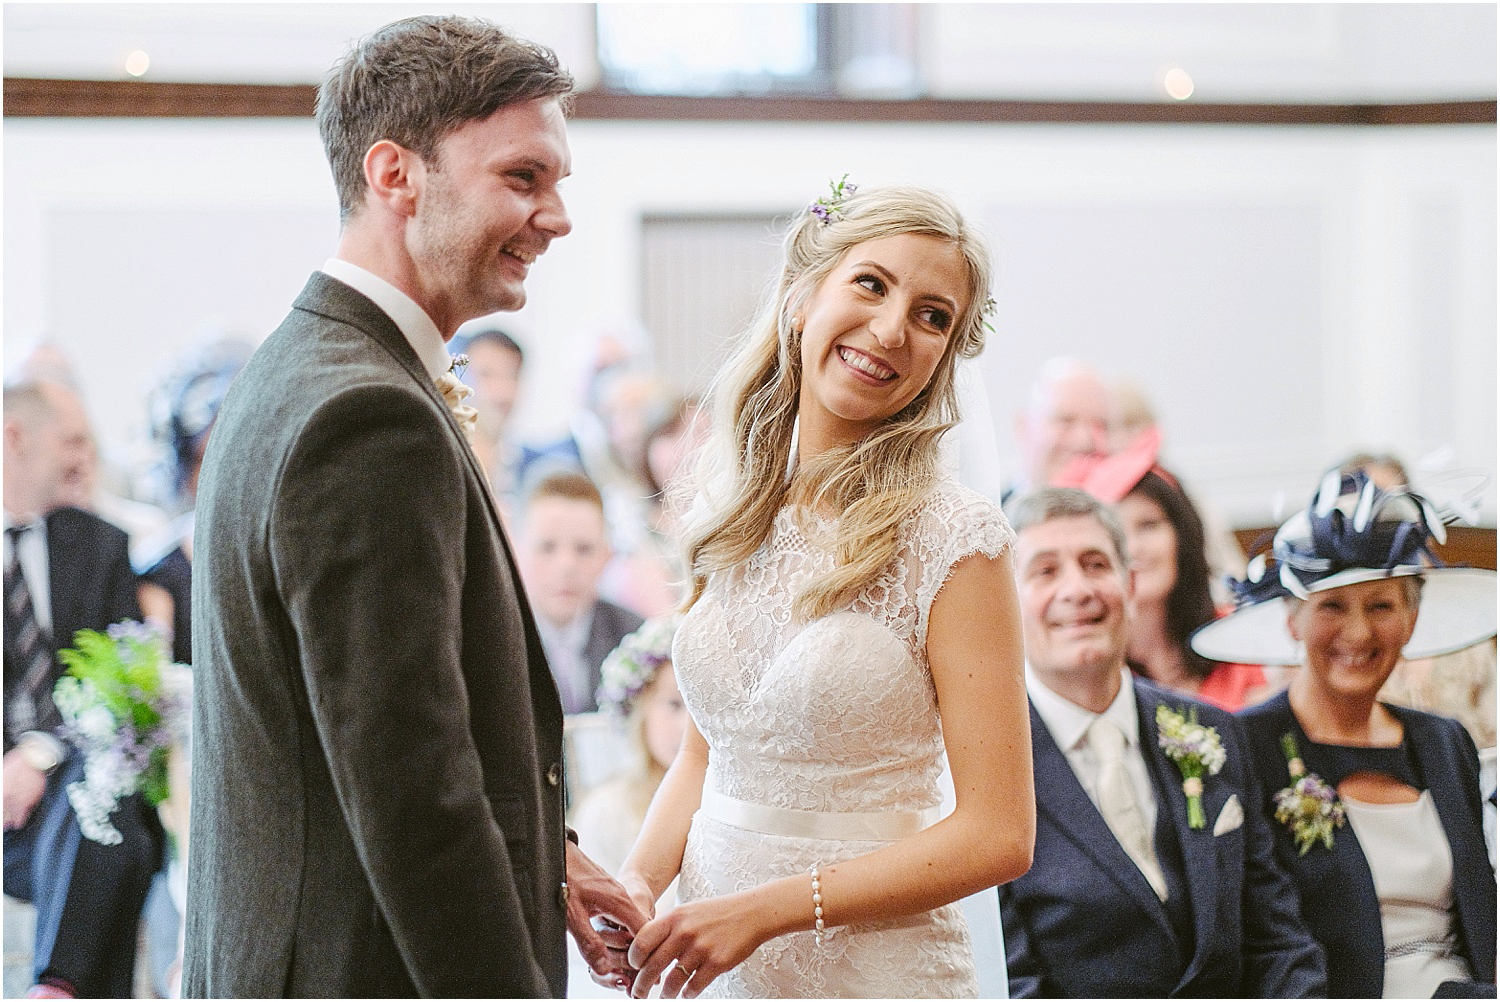 Beamish Hall wedding photography - Laura and Richard_0040.jpg